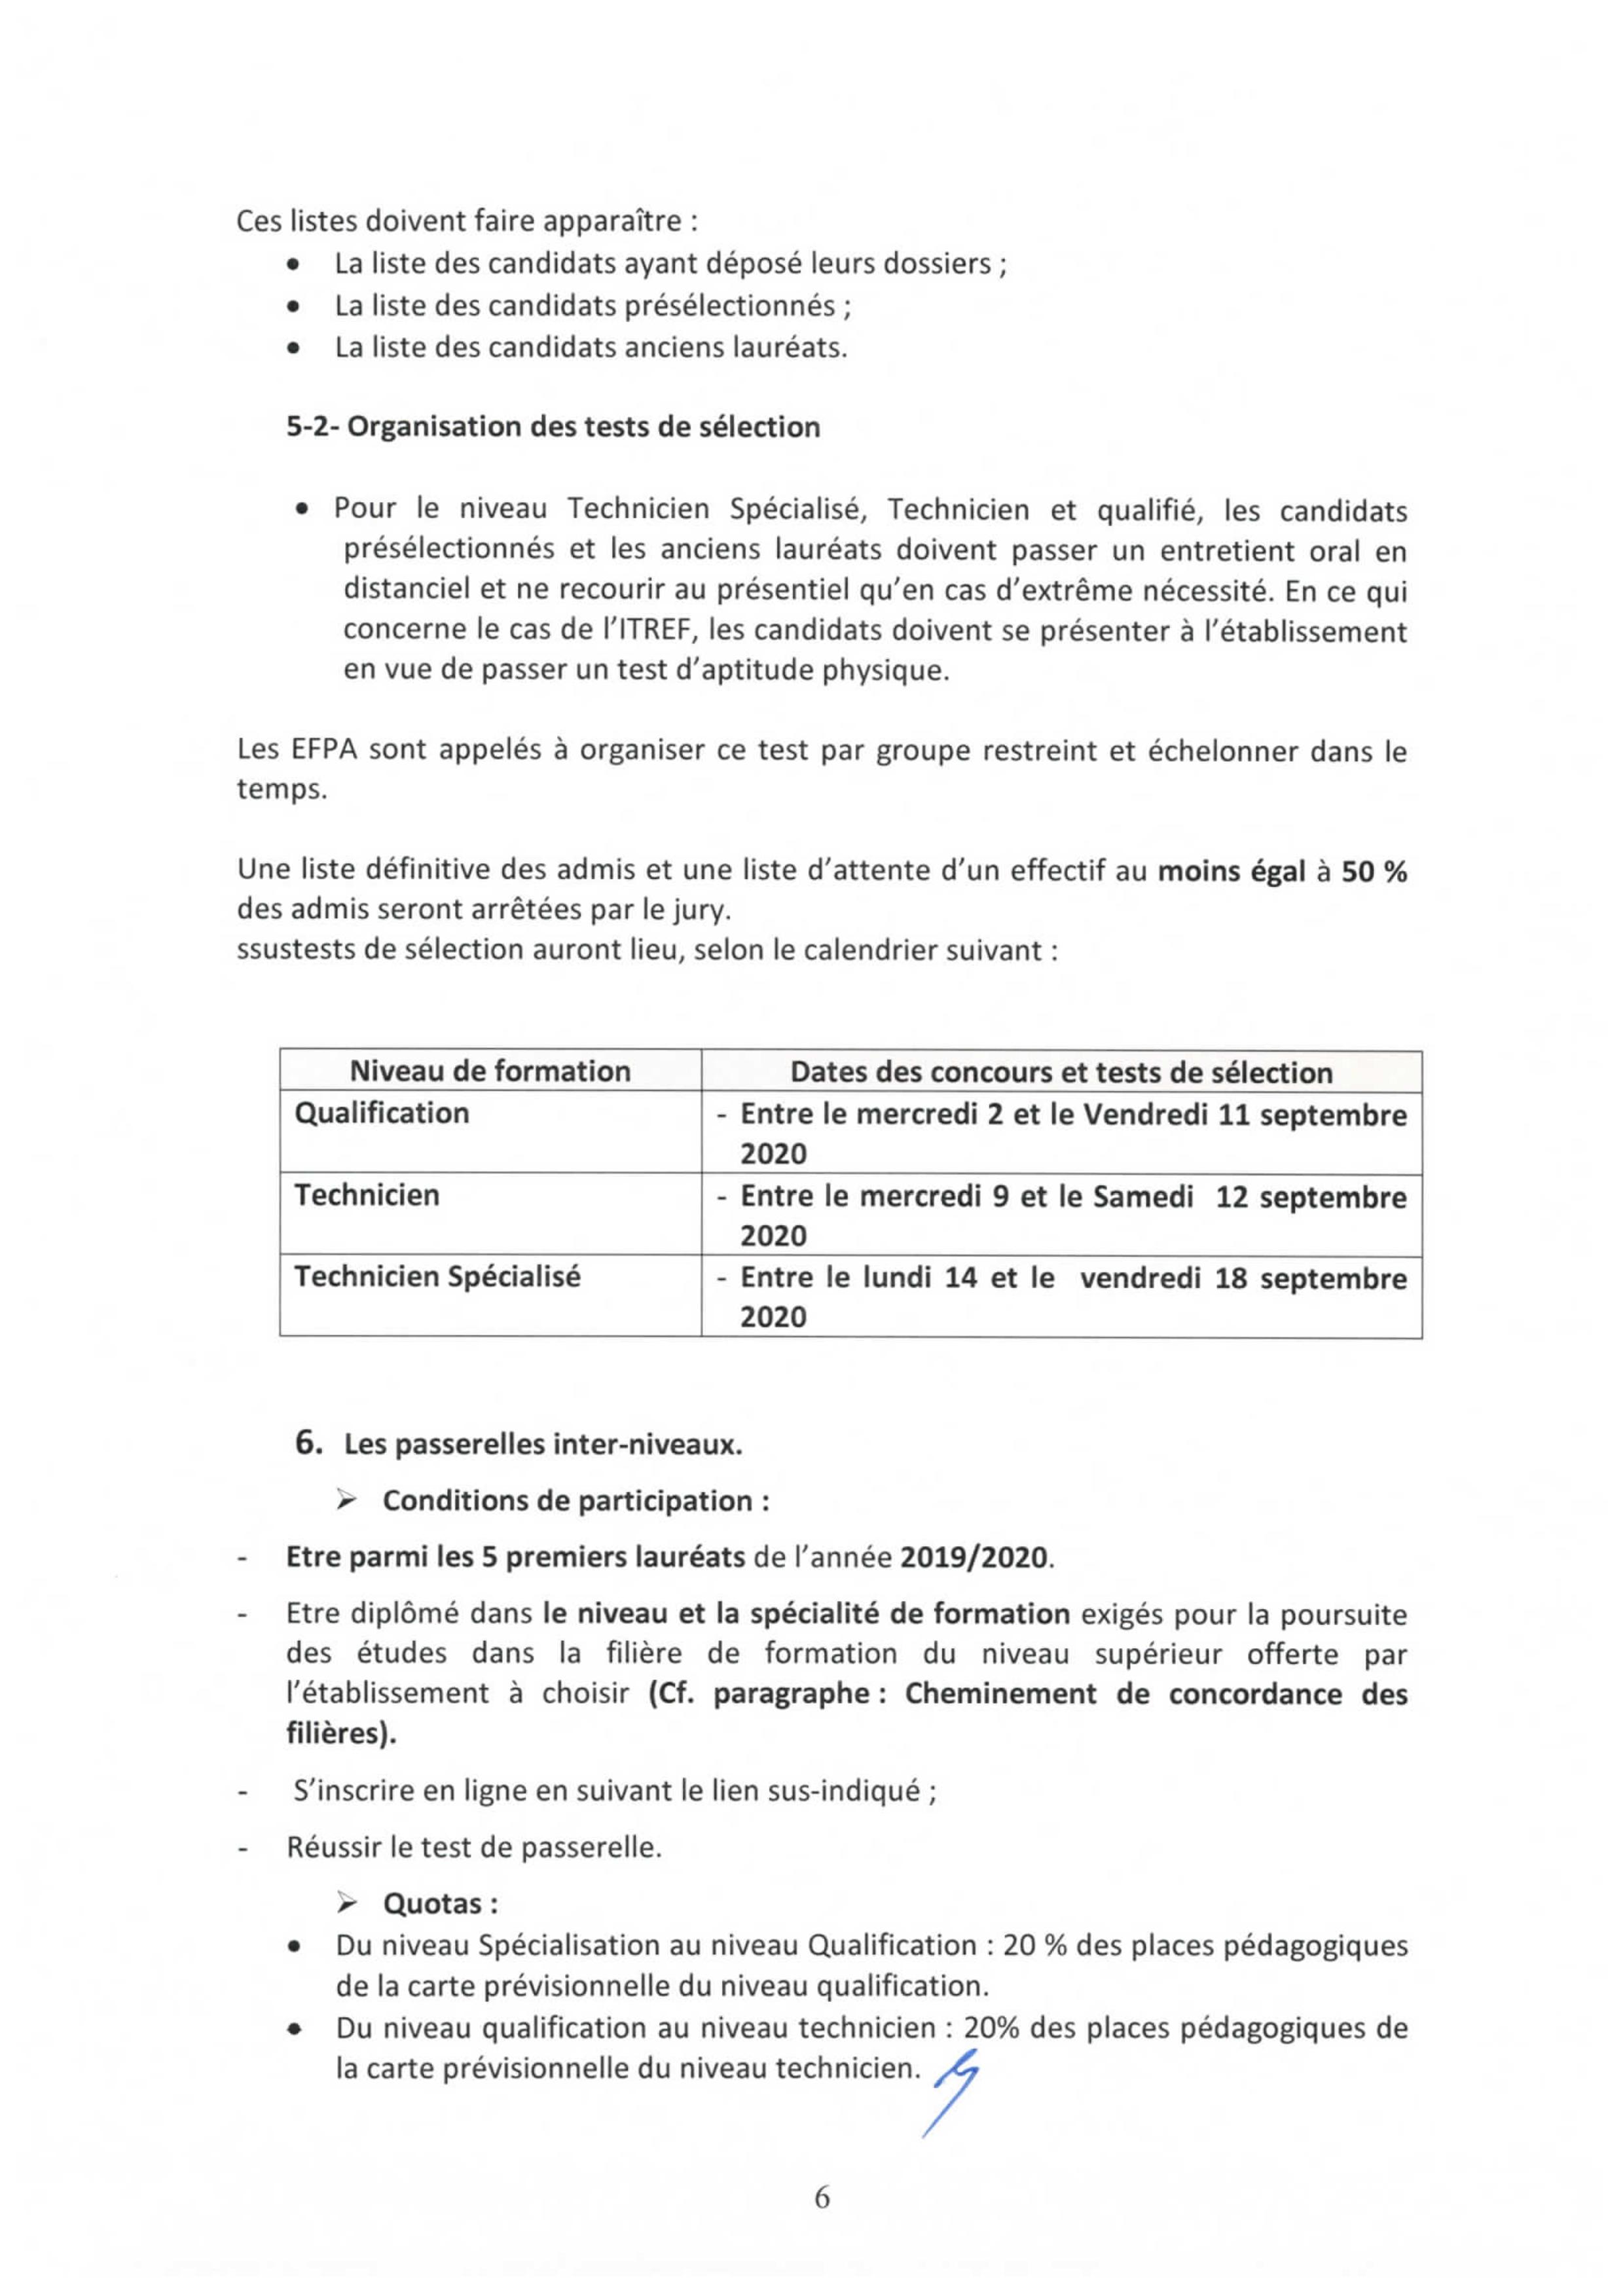 مذكرة الترشيح لجميع مستويات مؤسسات التكوين المهني الفلاحي بالمغرب 2020